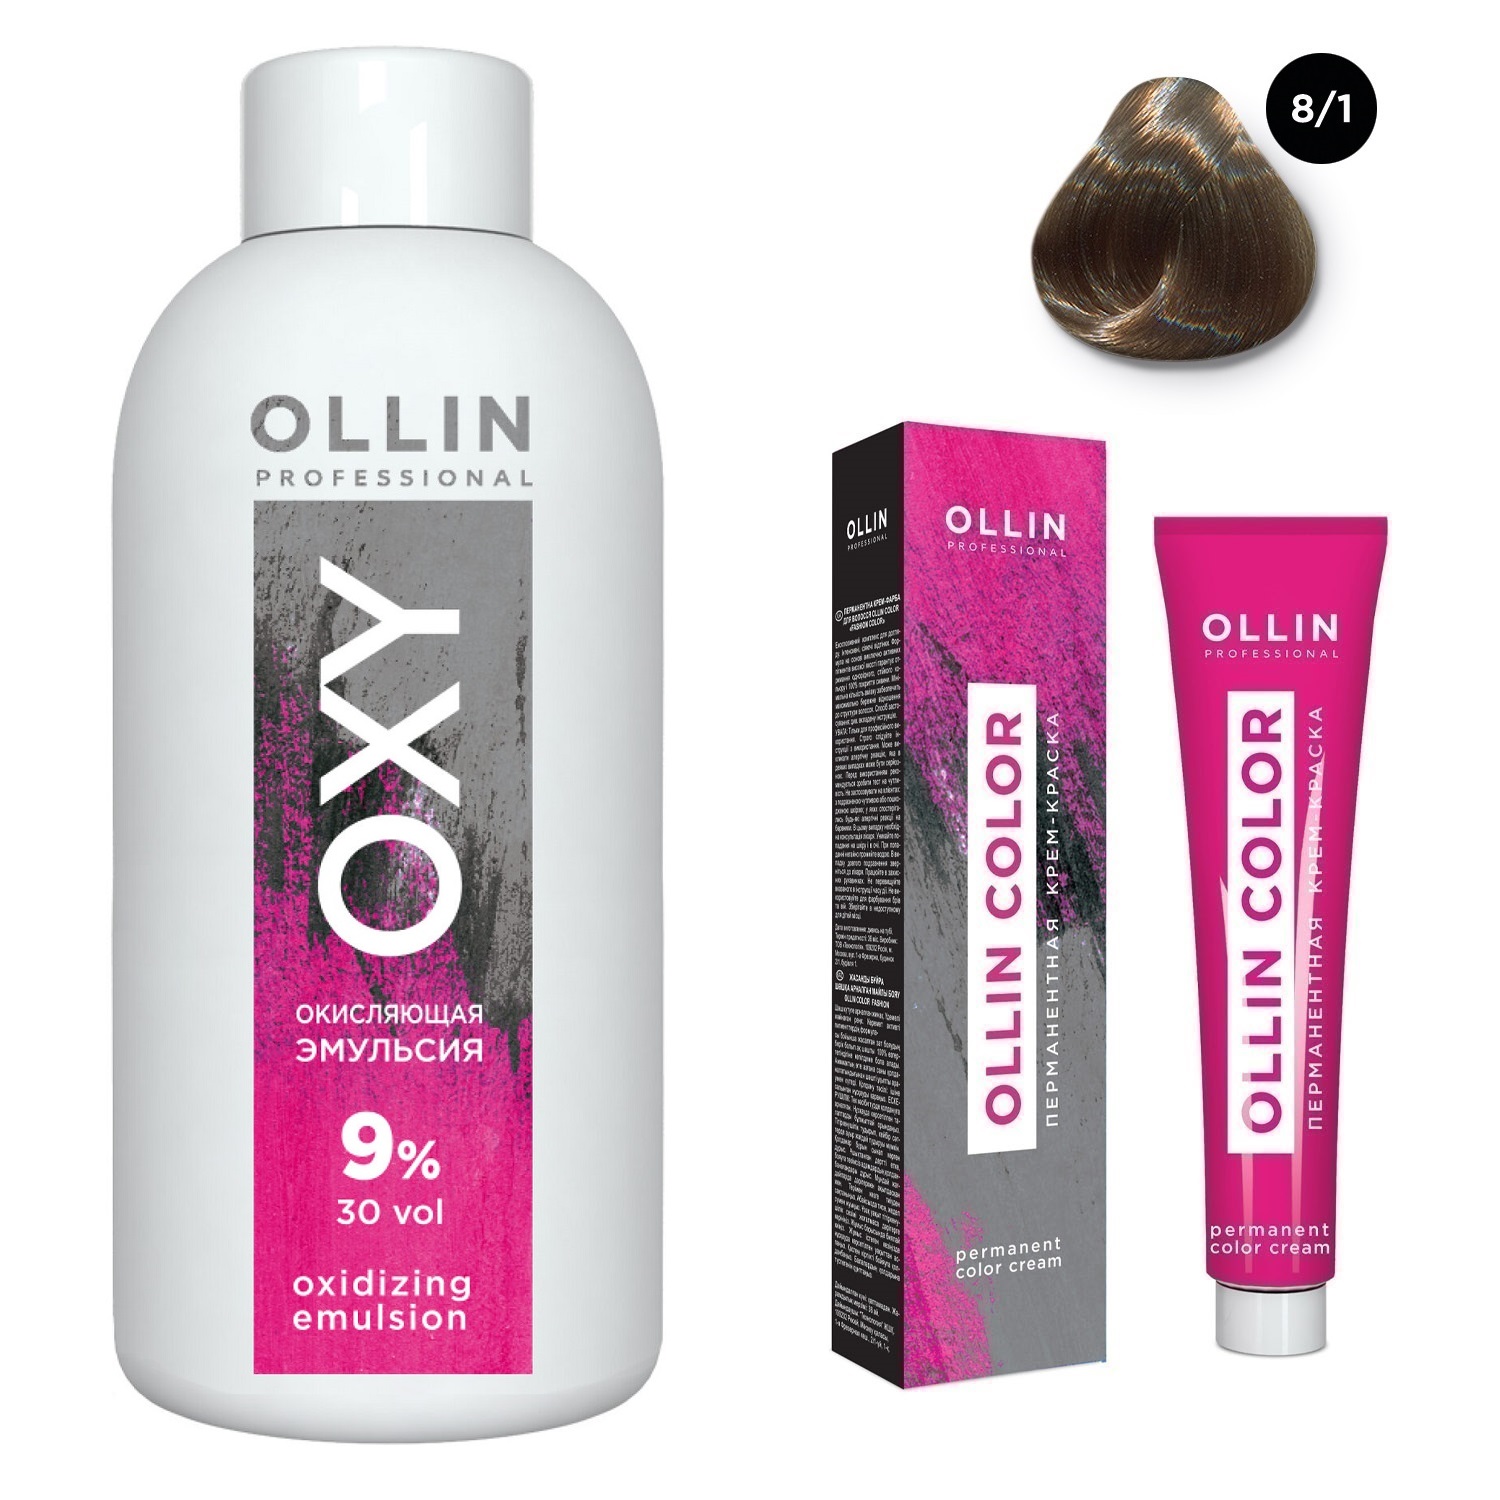 Ollin Professional Набор Перманентная крем-краска для волос Ollin Color оттенок 8/1 светло-русый пепельный 100 мл + Окисляющая эмульсия Oxy 9% 150 мл (Ollin Professional, Ollin Color) цена и фото